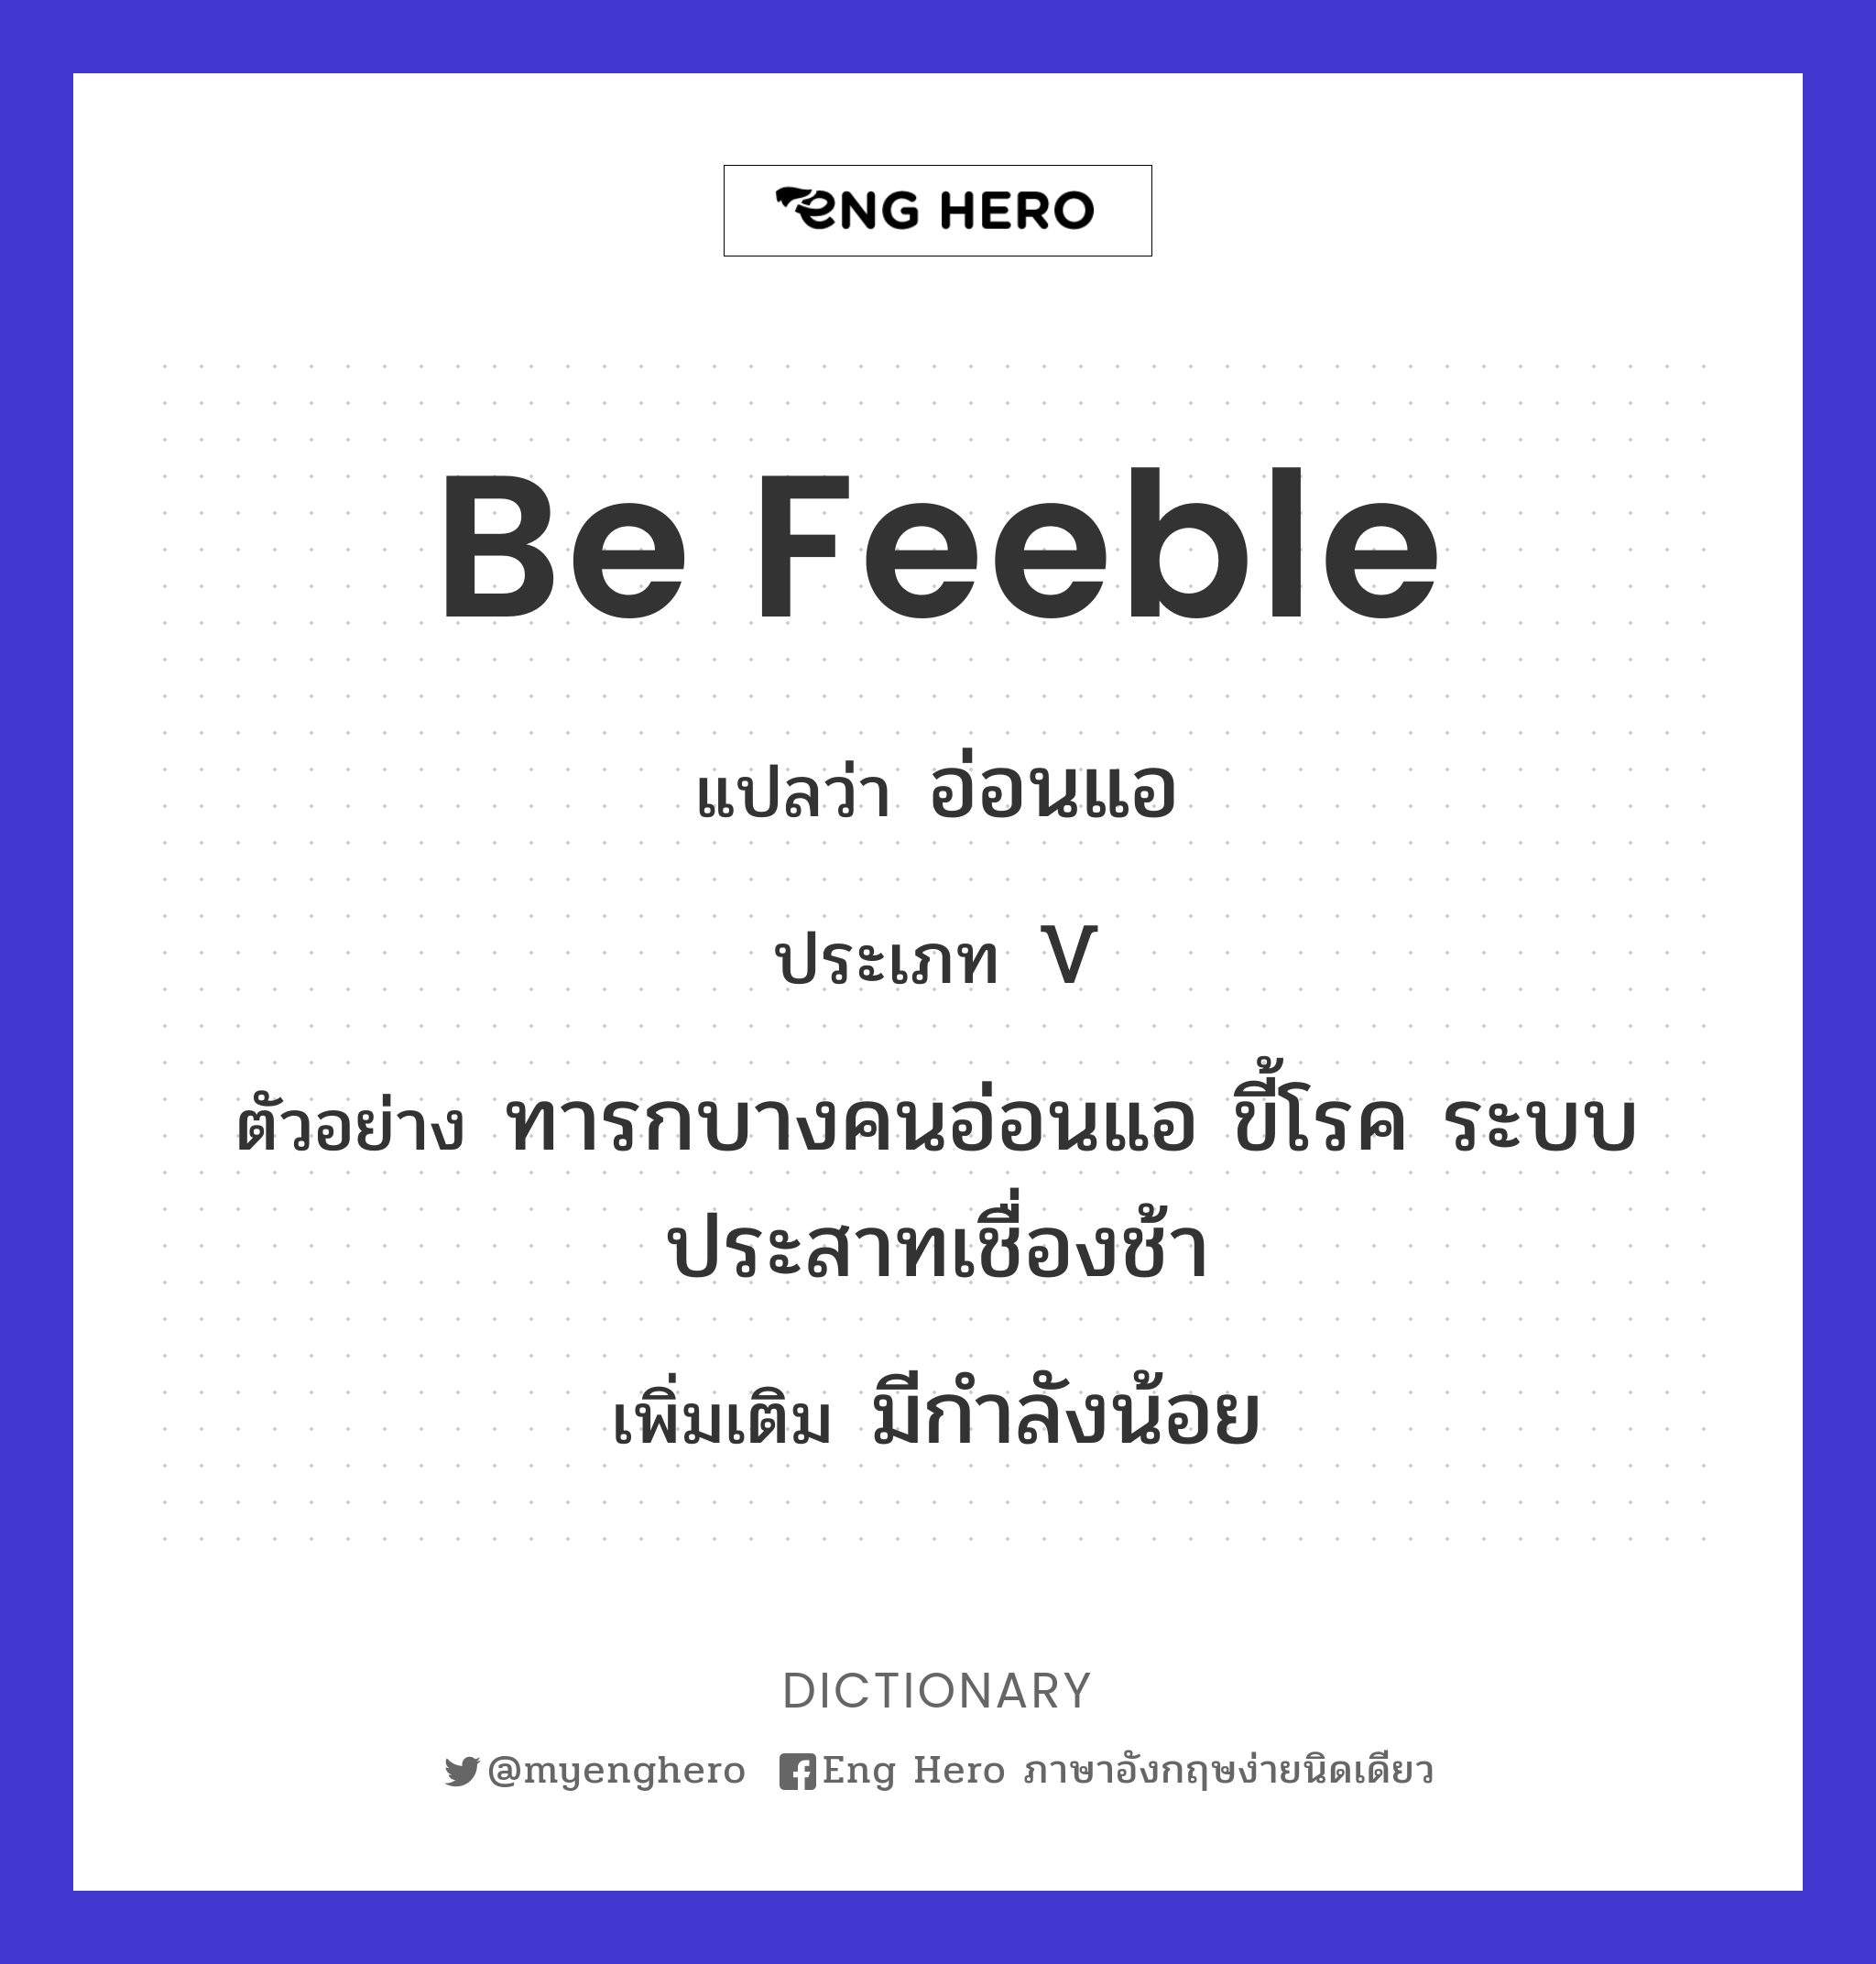 be feeble